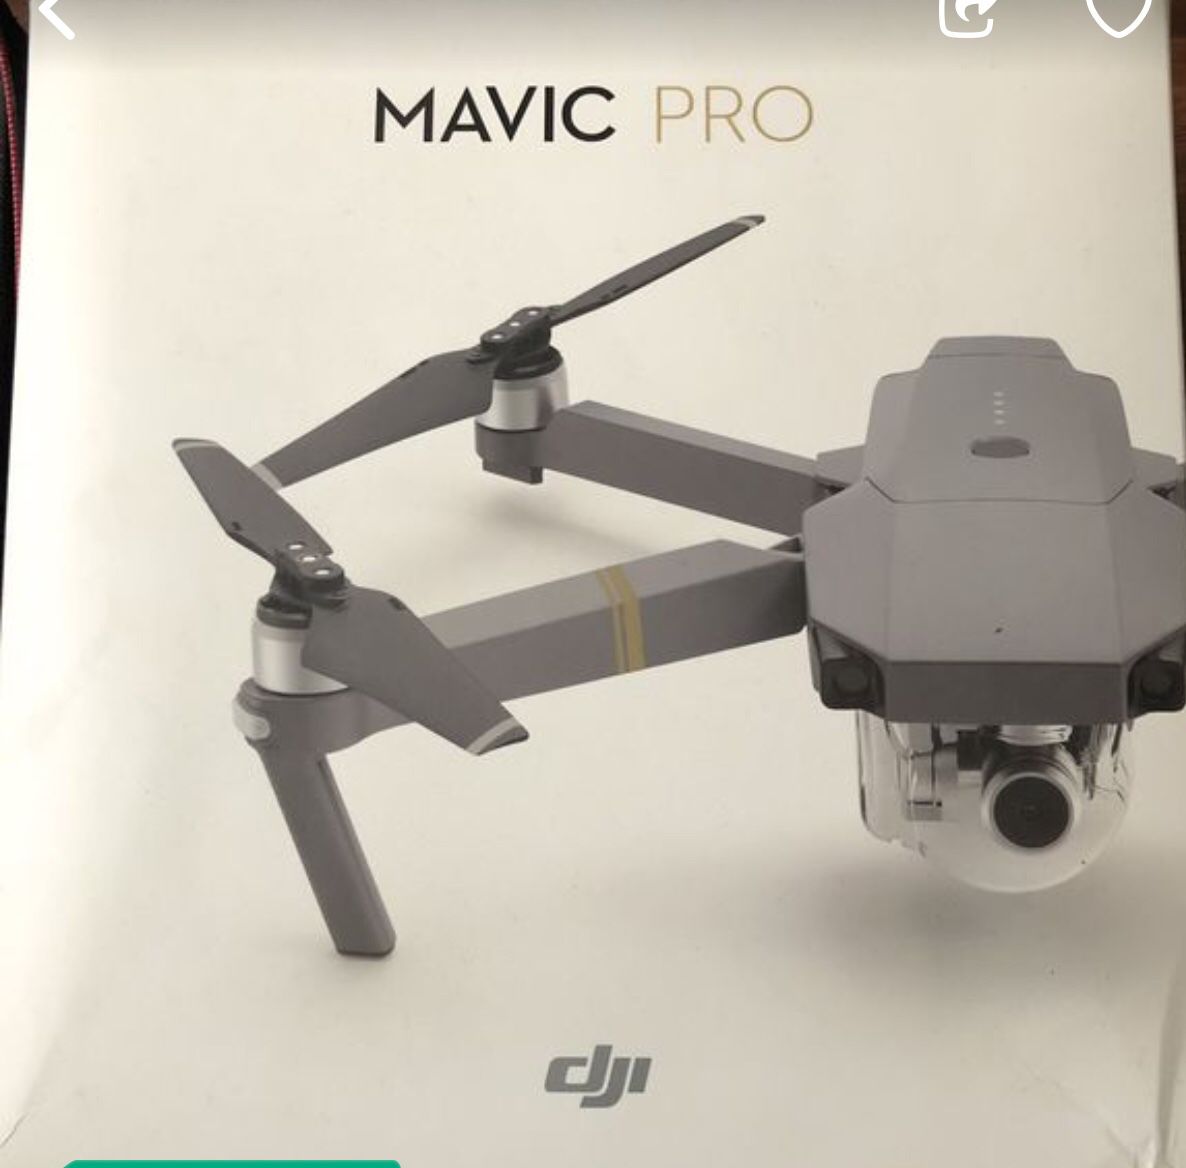 Magic pro drone